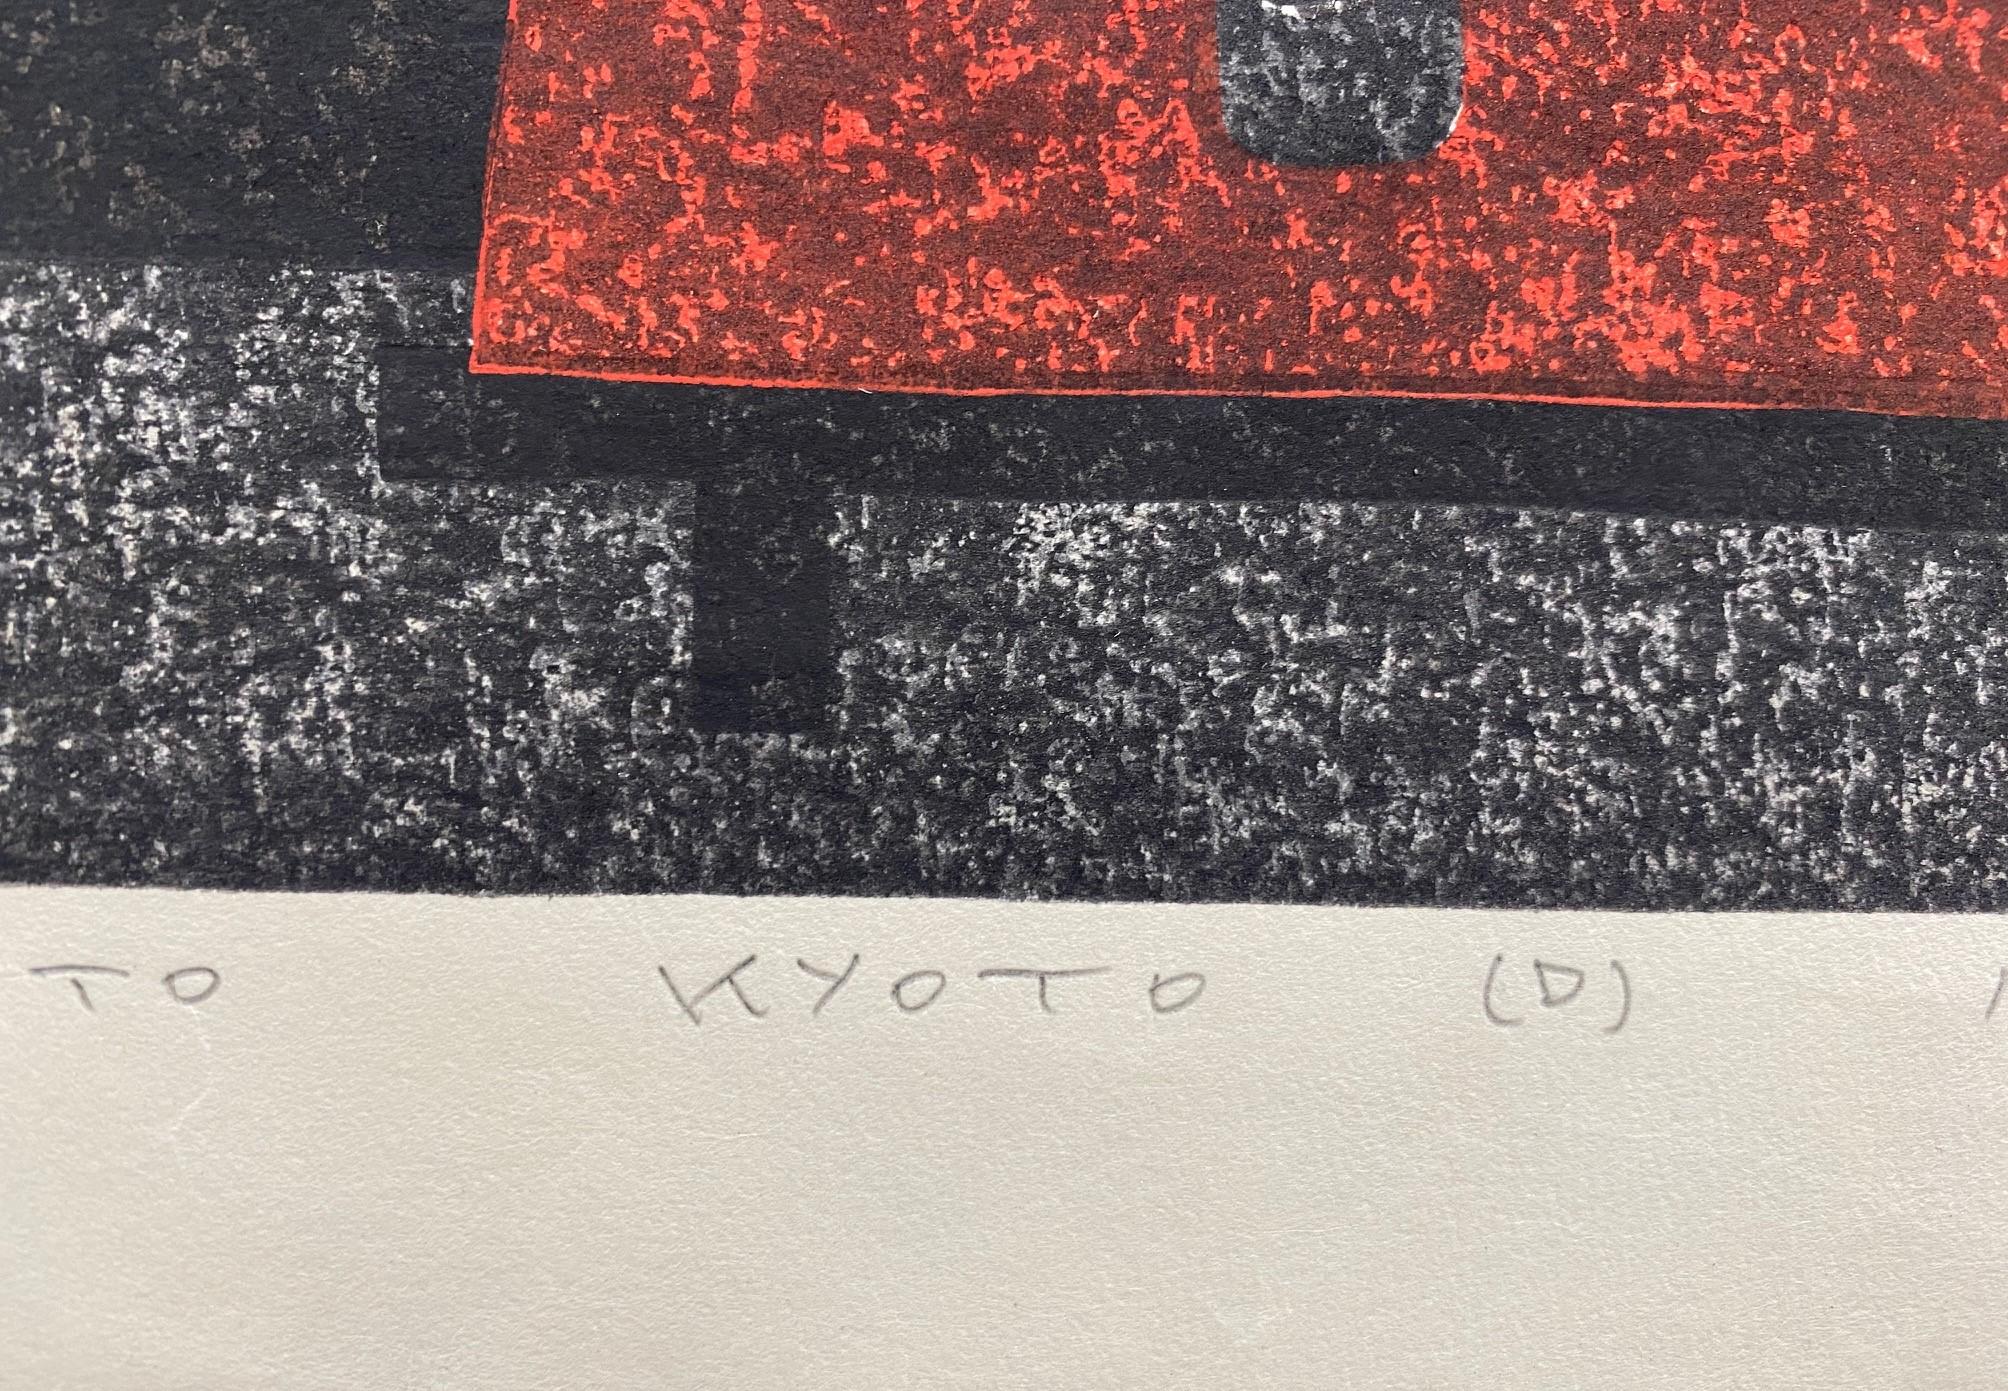 Kiyoshi Saito, signierter japanischer Holzschnitt in limitierter Auflage, Toriemoto Kyoto D 3